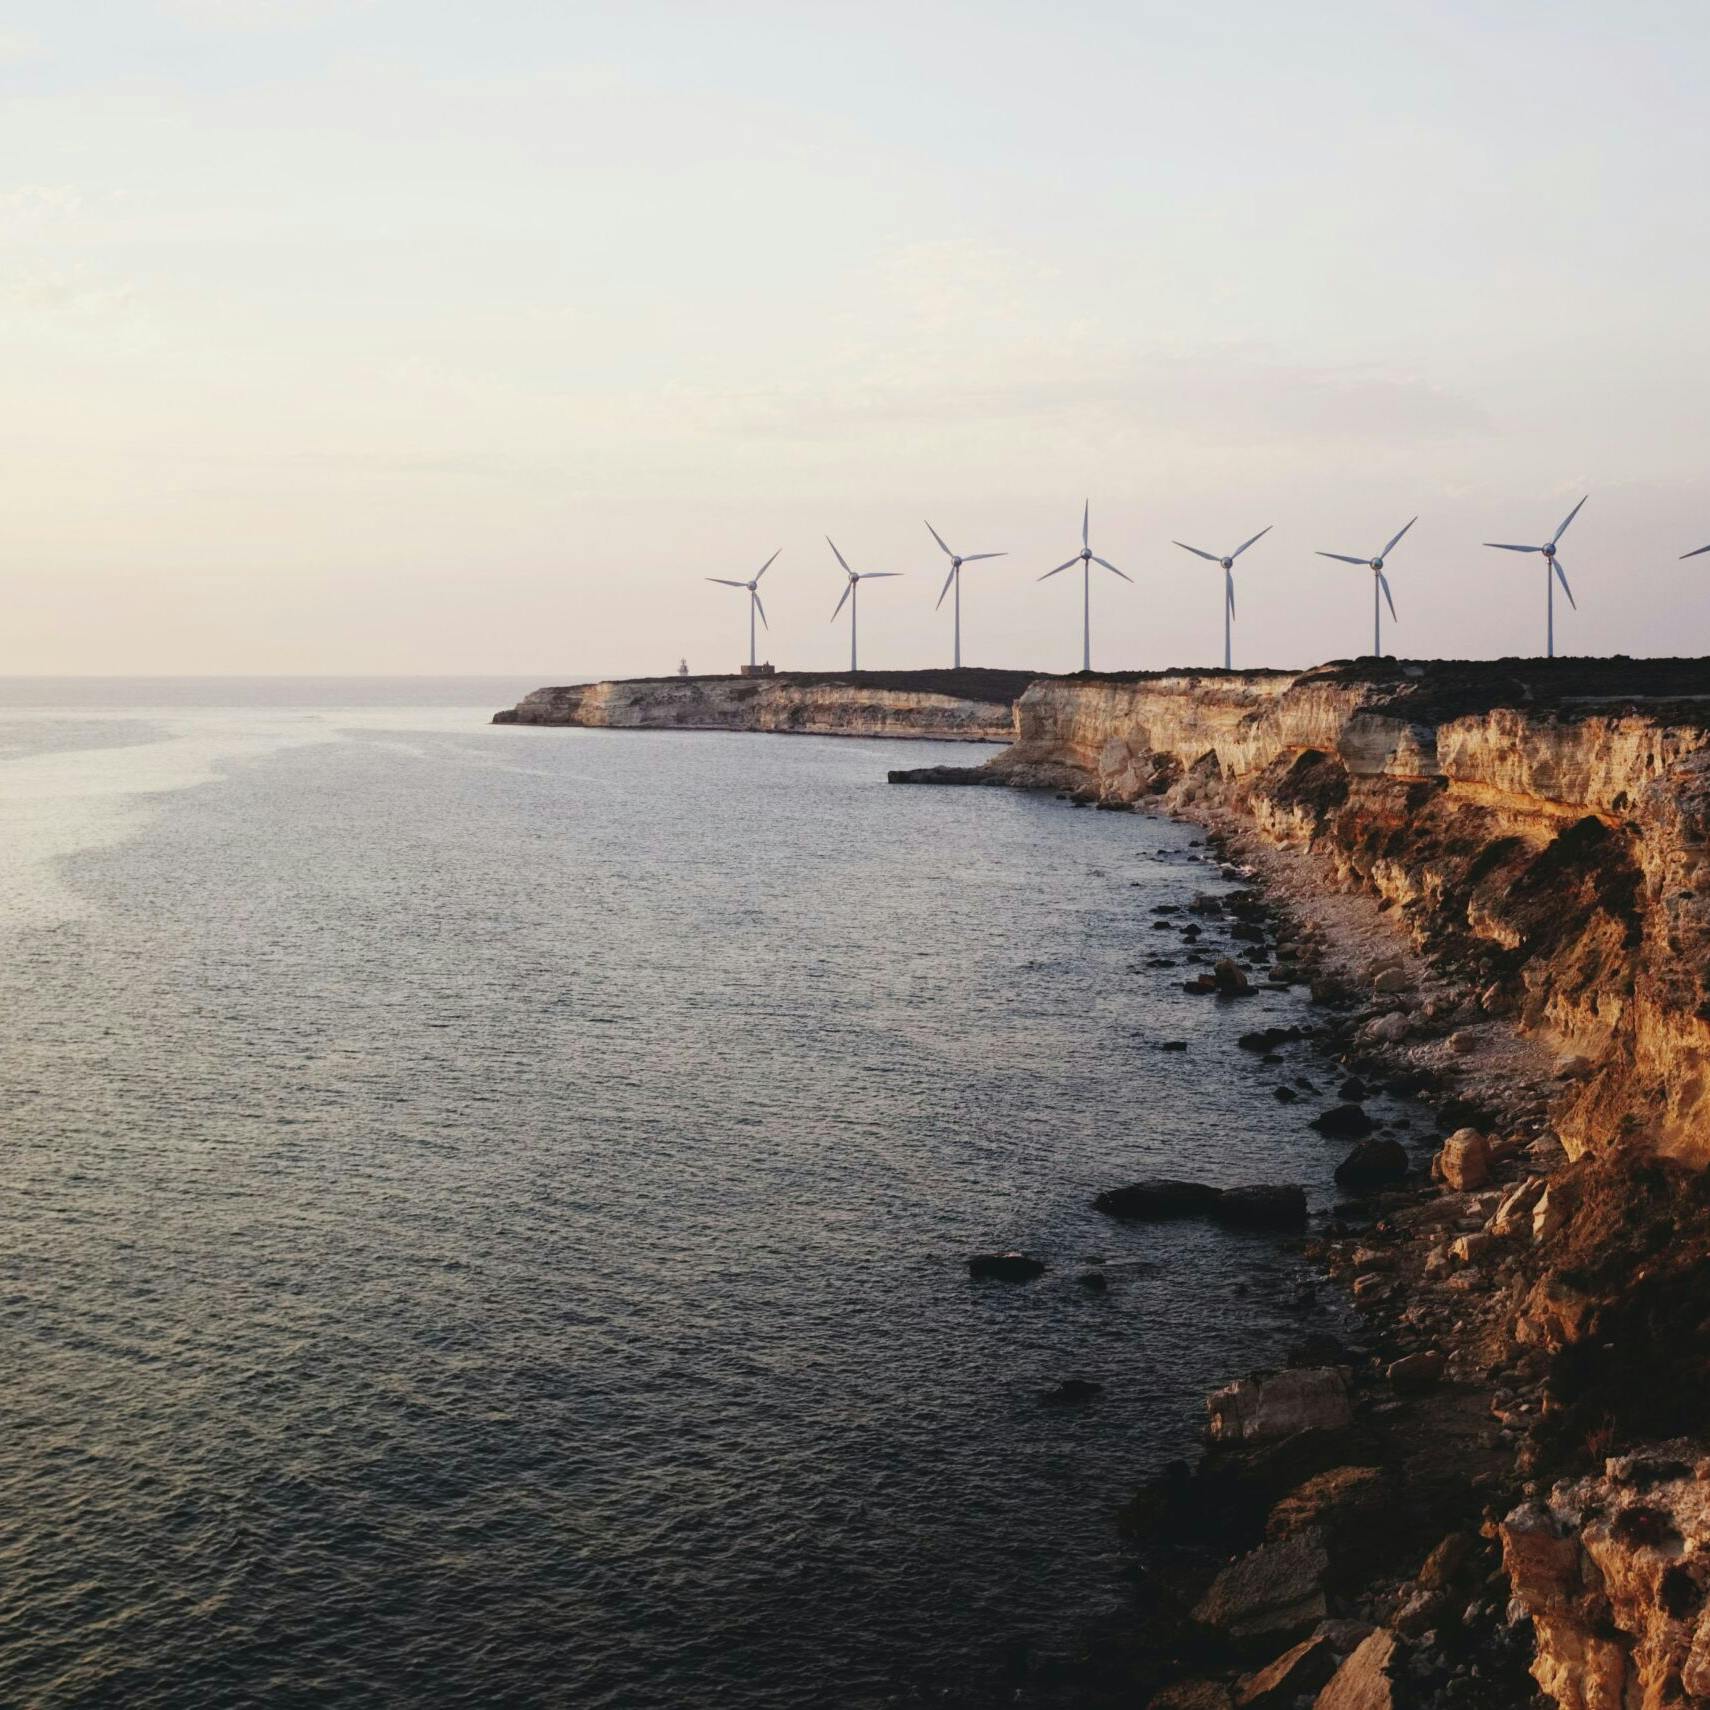 'De hele energiemarkt groeit, en de markt voor wind op zee groeit nog harder'